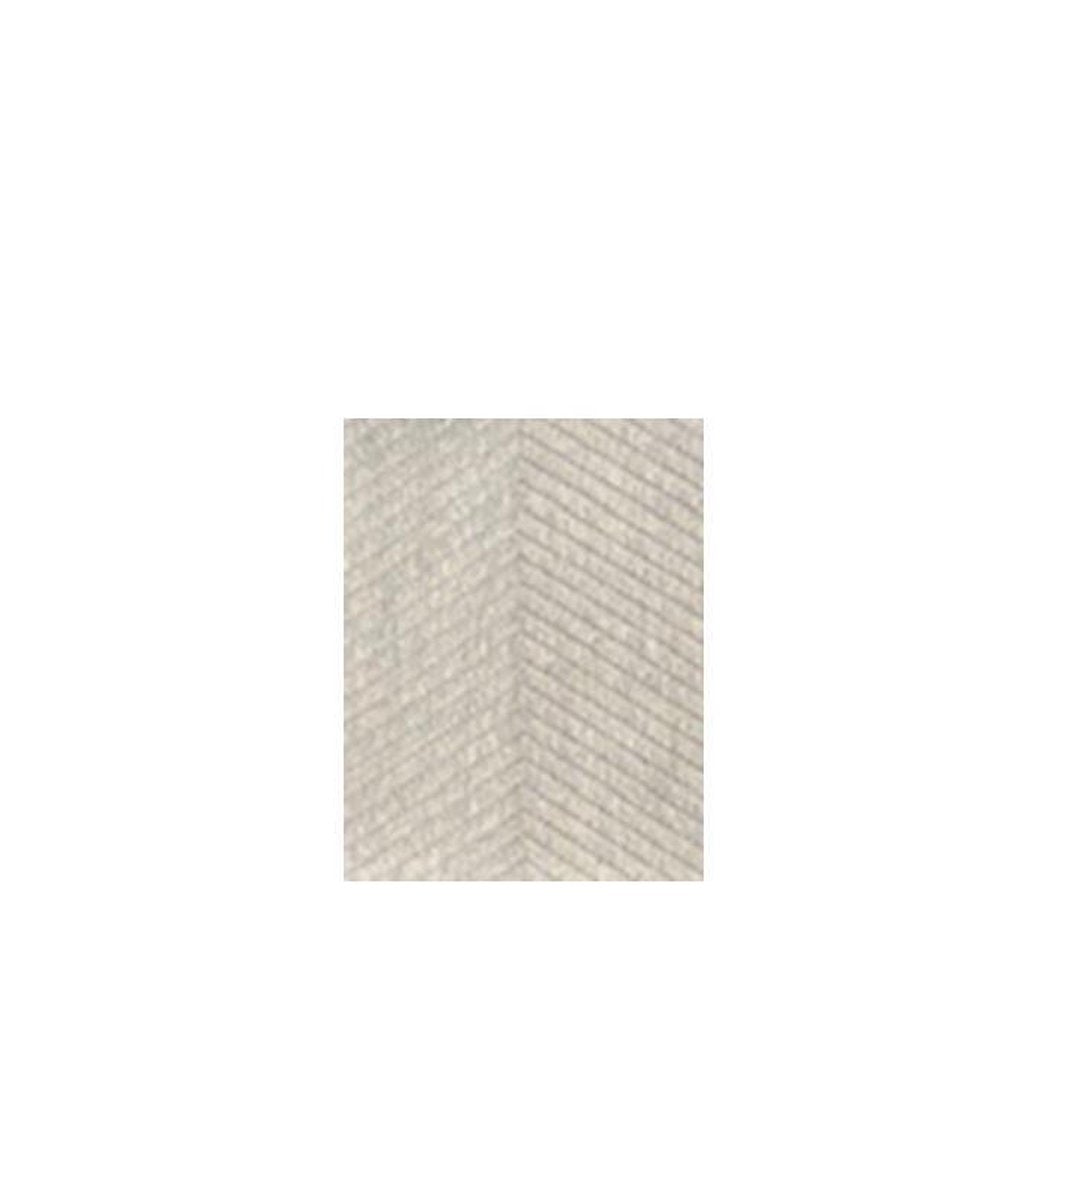 Exclusief Vloerkleed Viva recto verso - tweezijdig vloerkleed - gratis antislip bijgeleverd - licht grijs silver - 160/230 cm - tapijt - gestreept en visgraat